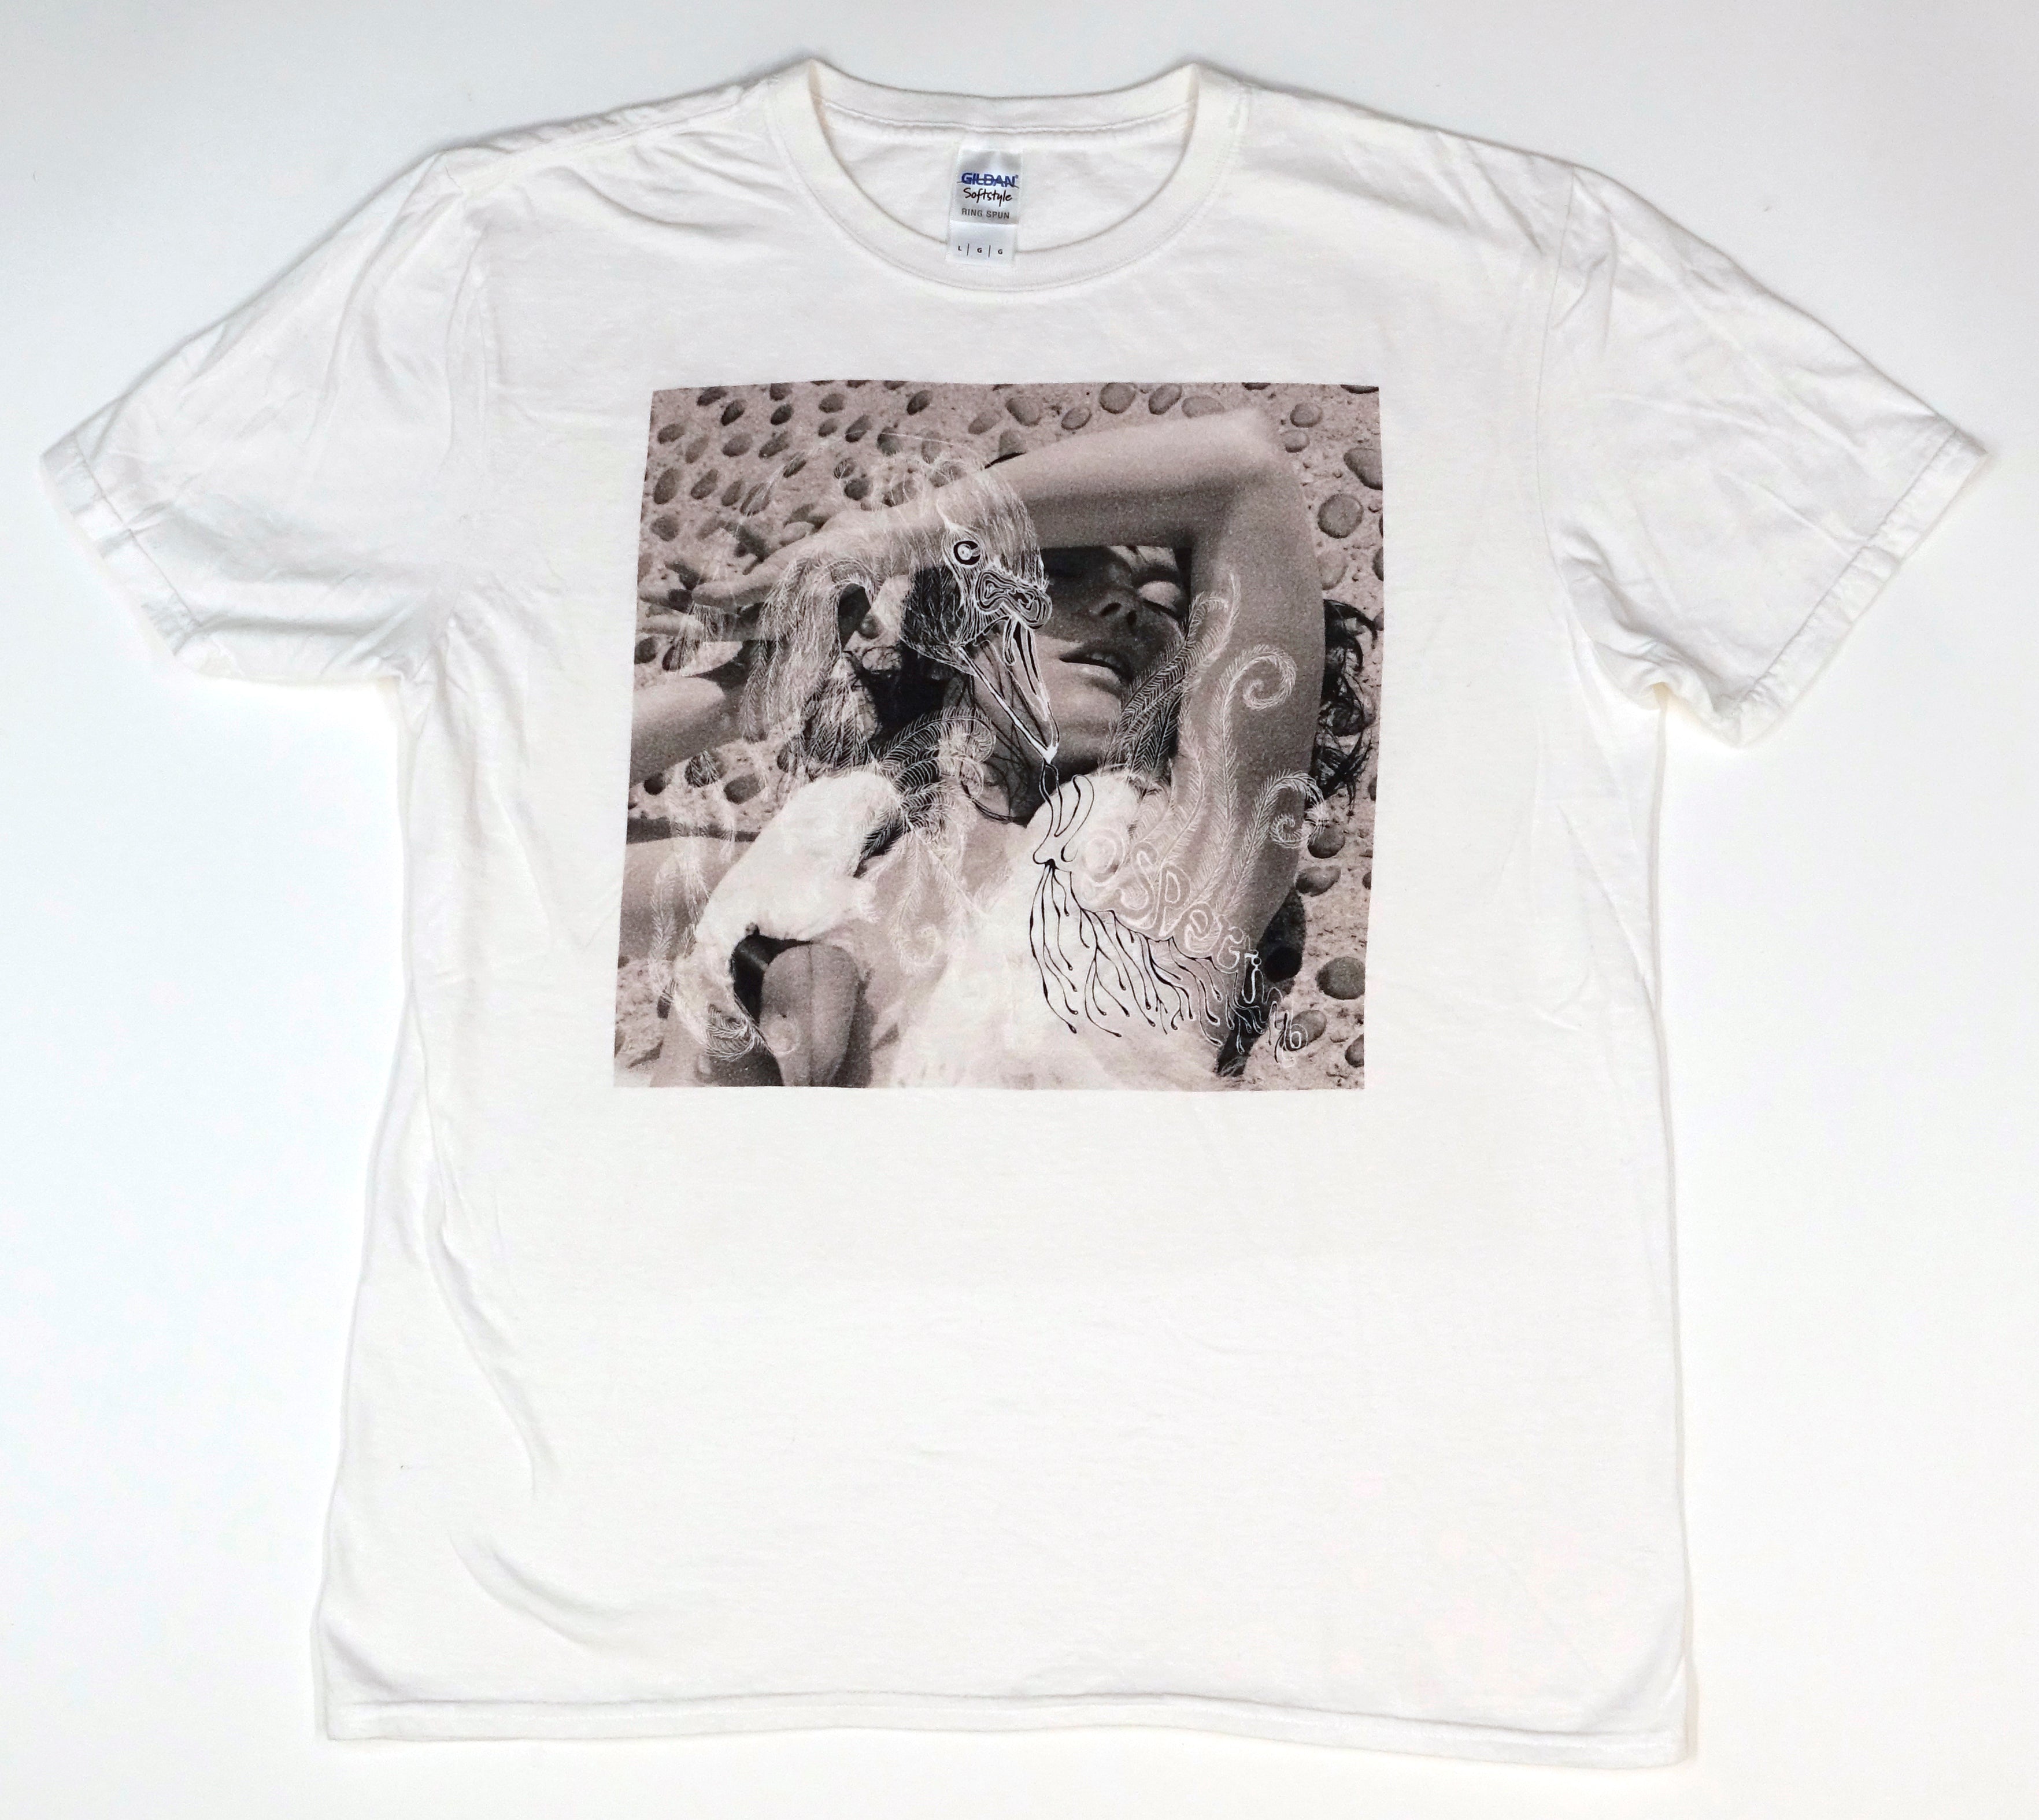 Björk - Vespertine Cover 2015 Tour Shirt Size Large